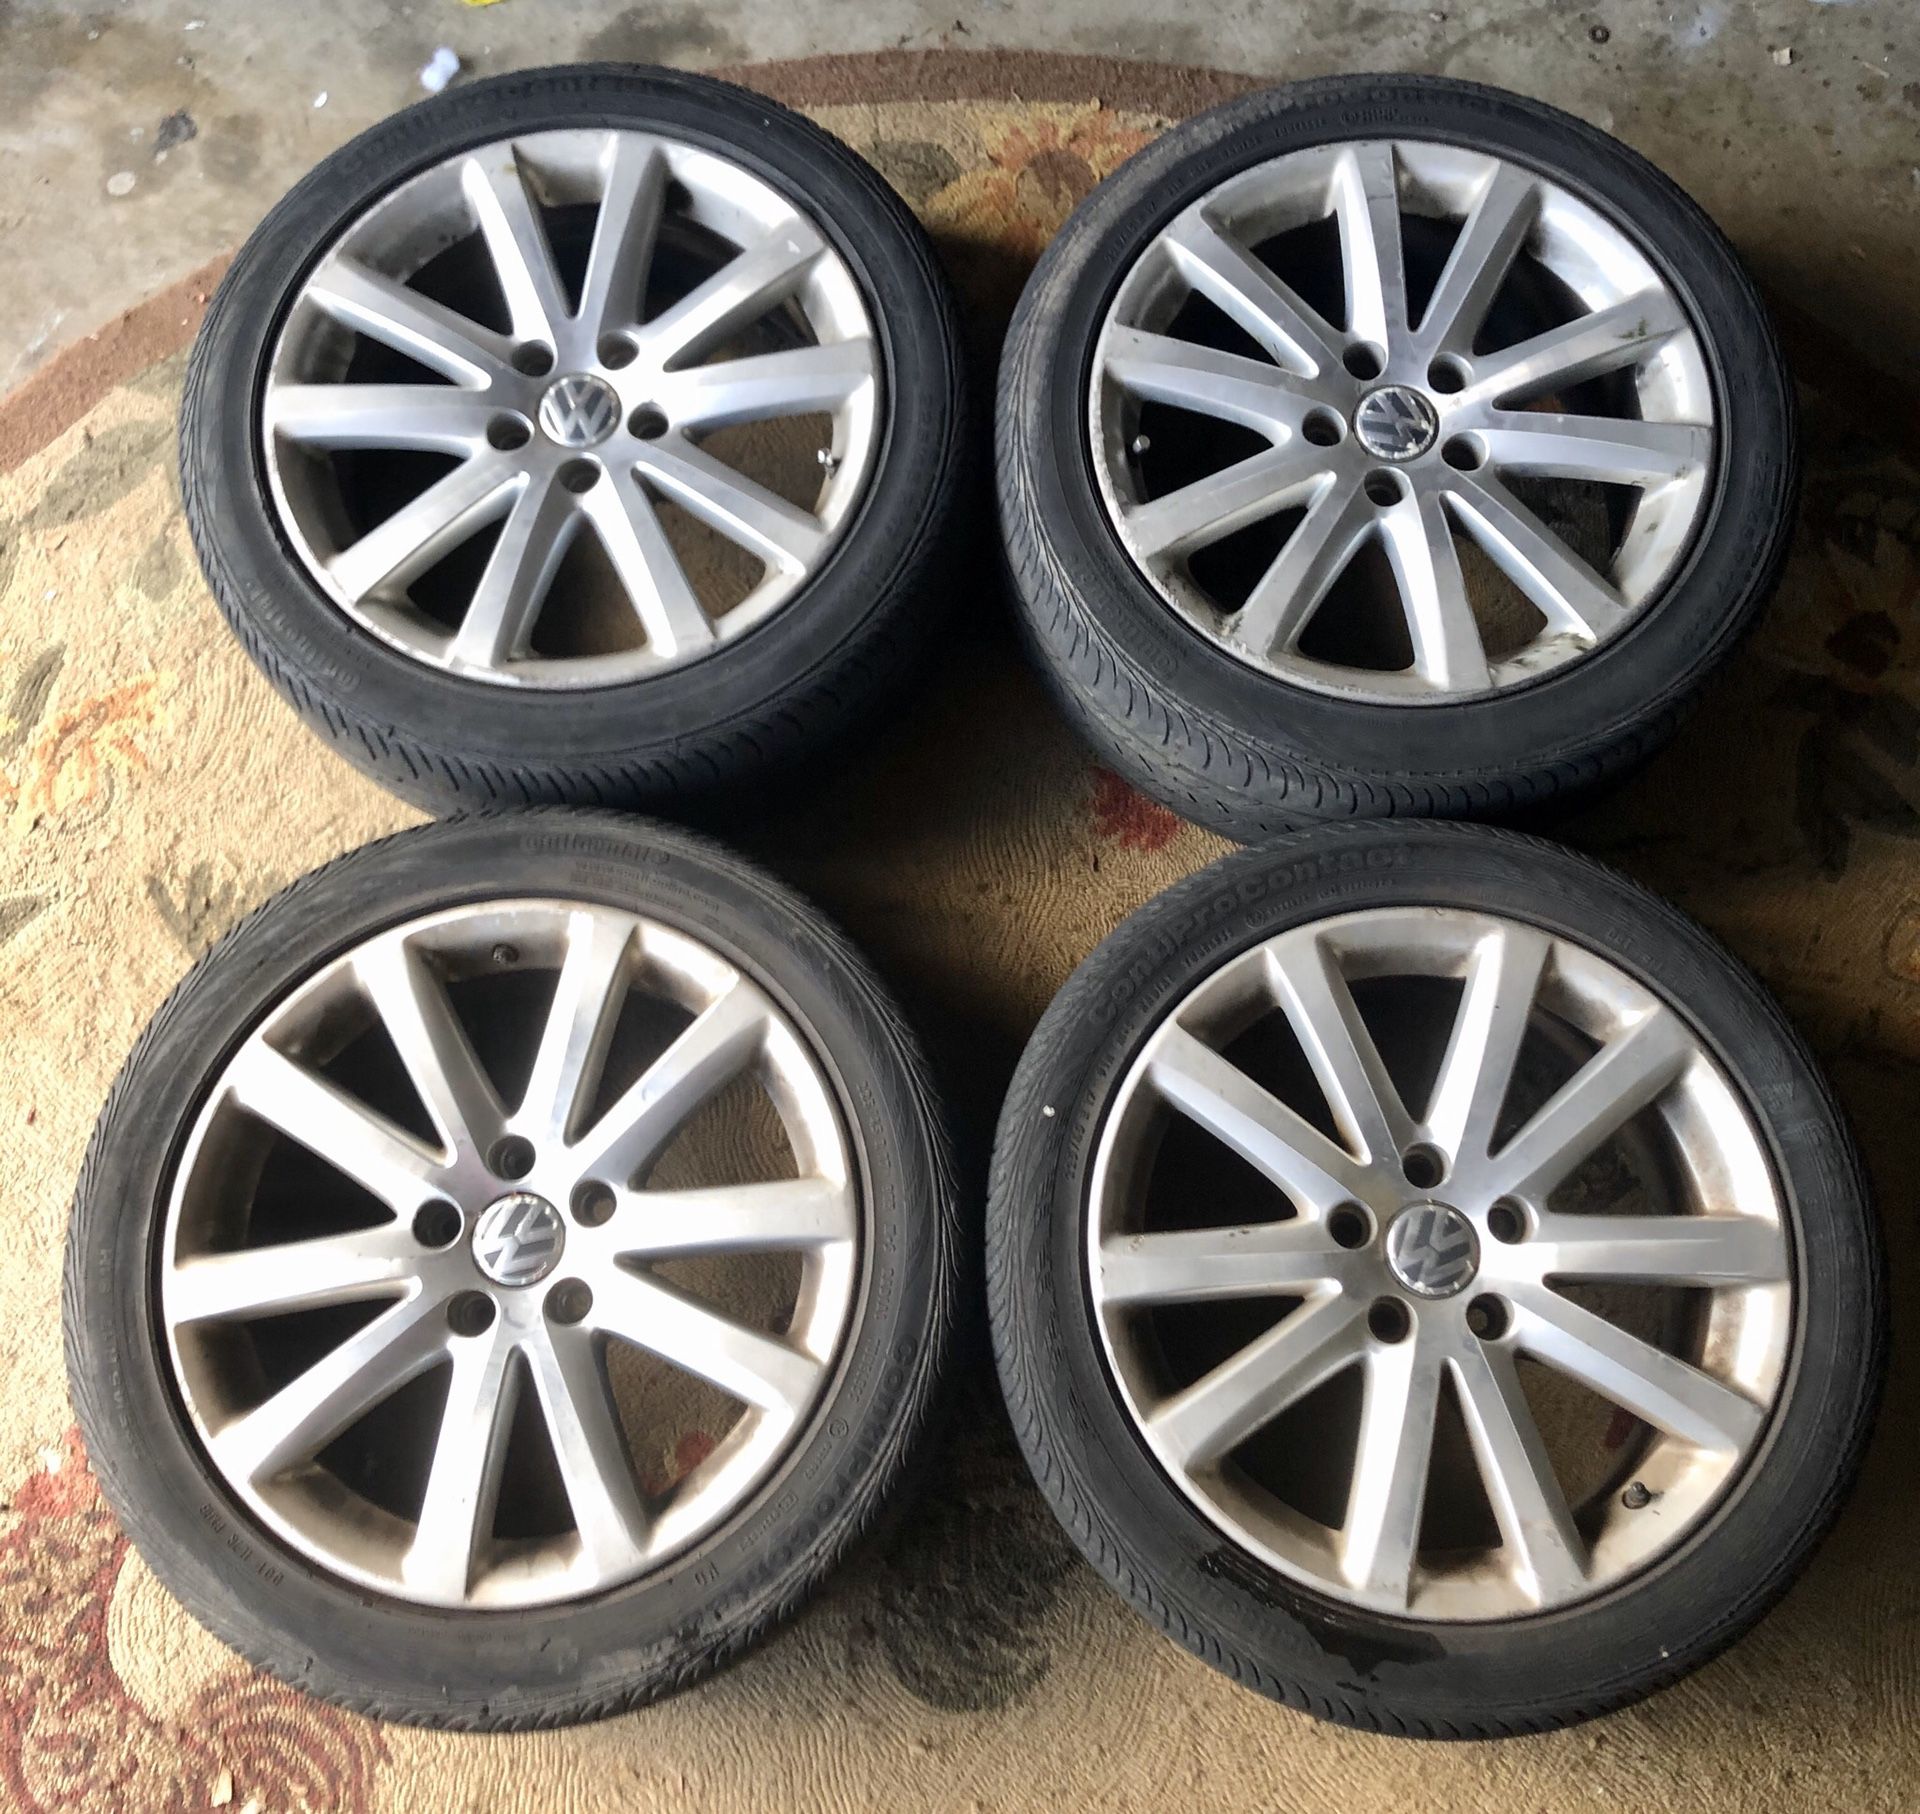 17” Volkswagen audi rims wheels and tires